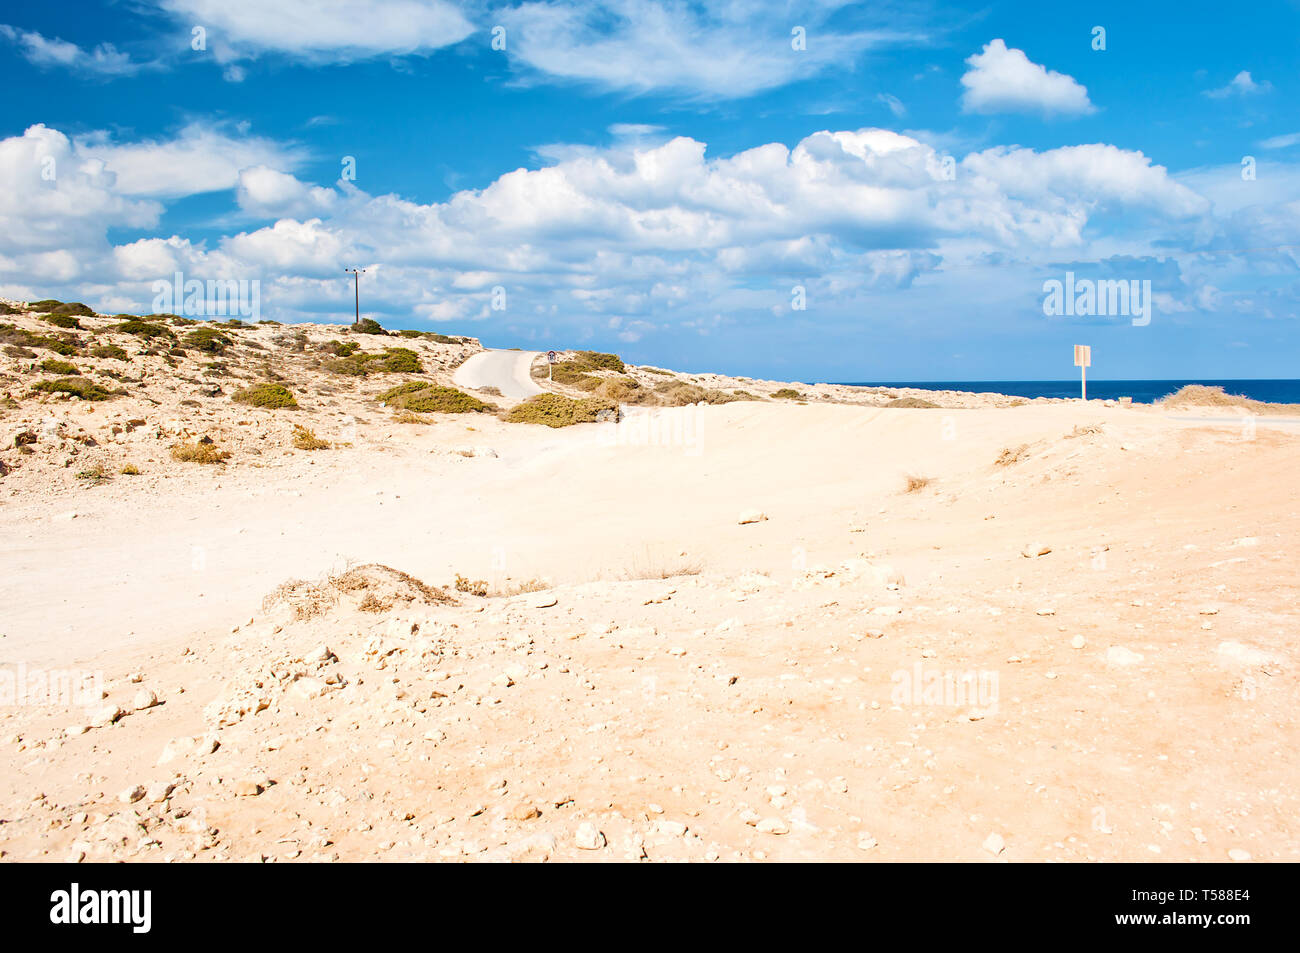 Bild von rauhem Kalkstein Küste in der Nähe von Kap Greco, Zypern. Viele weiße Wolken am Himmel, kargen orange sandigen Hügel, Weite. Warmer Tag im Herbst Stockfoto